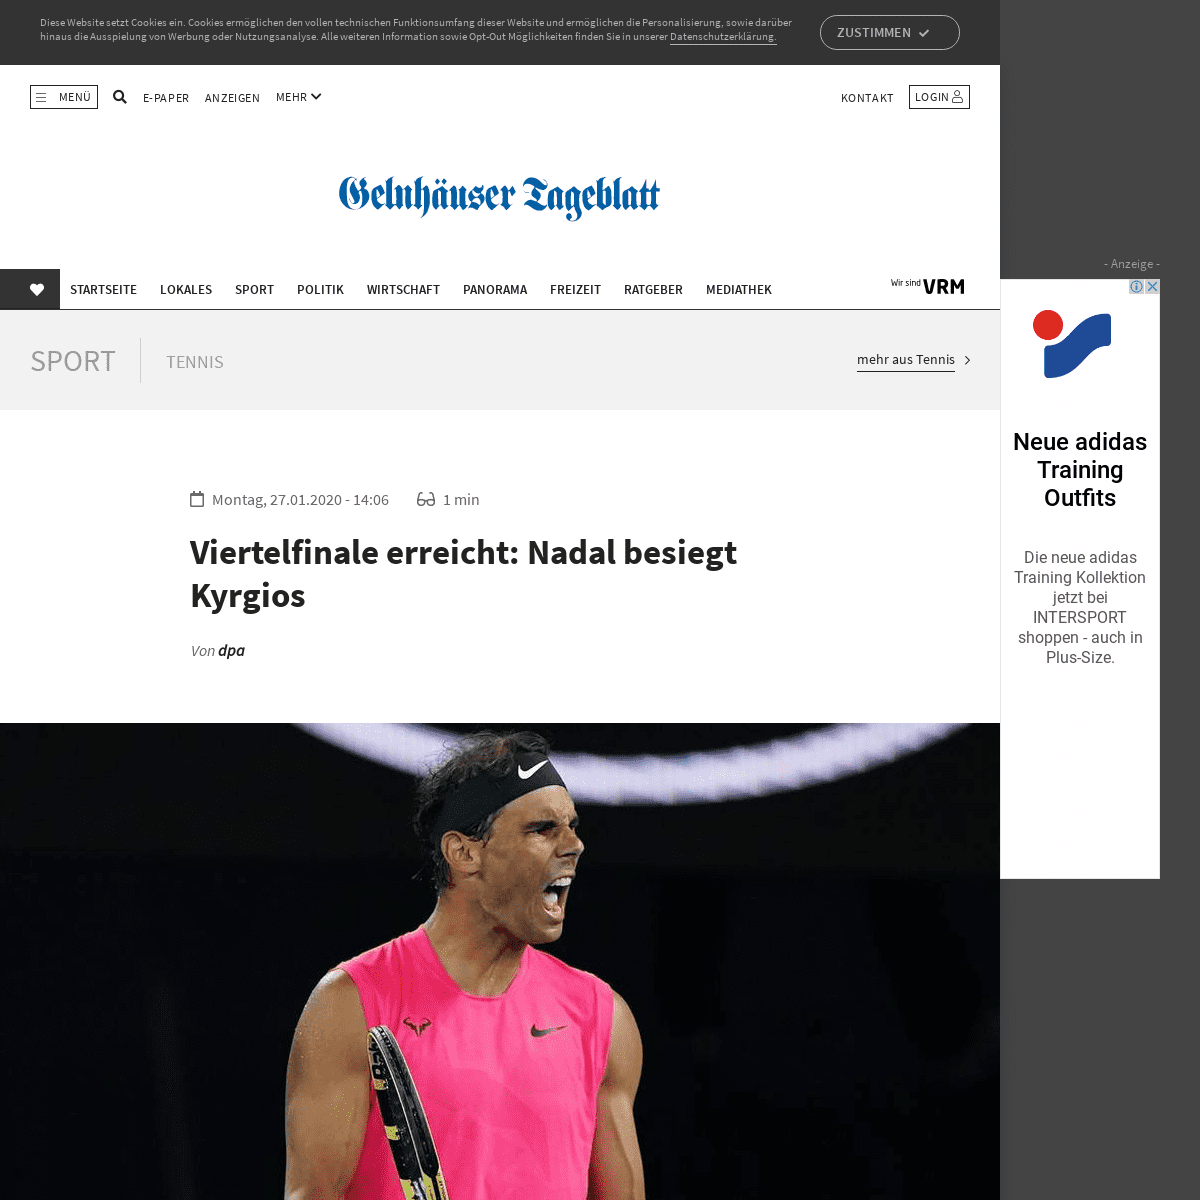 A complete backup of www.gelnhaeuser-tageblatt.de/sport/tennis/tennis/viertelfinale-erreicht-nadal-besiegt-kyrgios_21121760